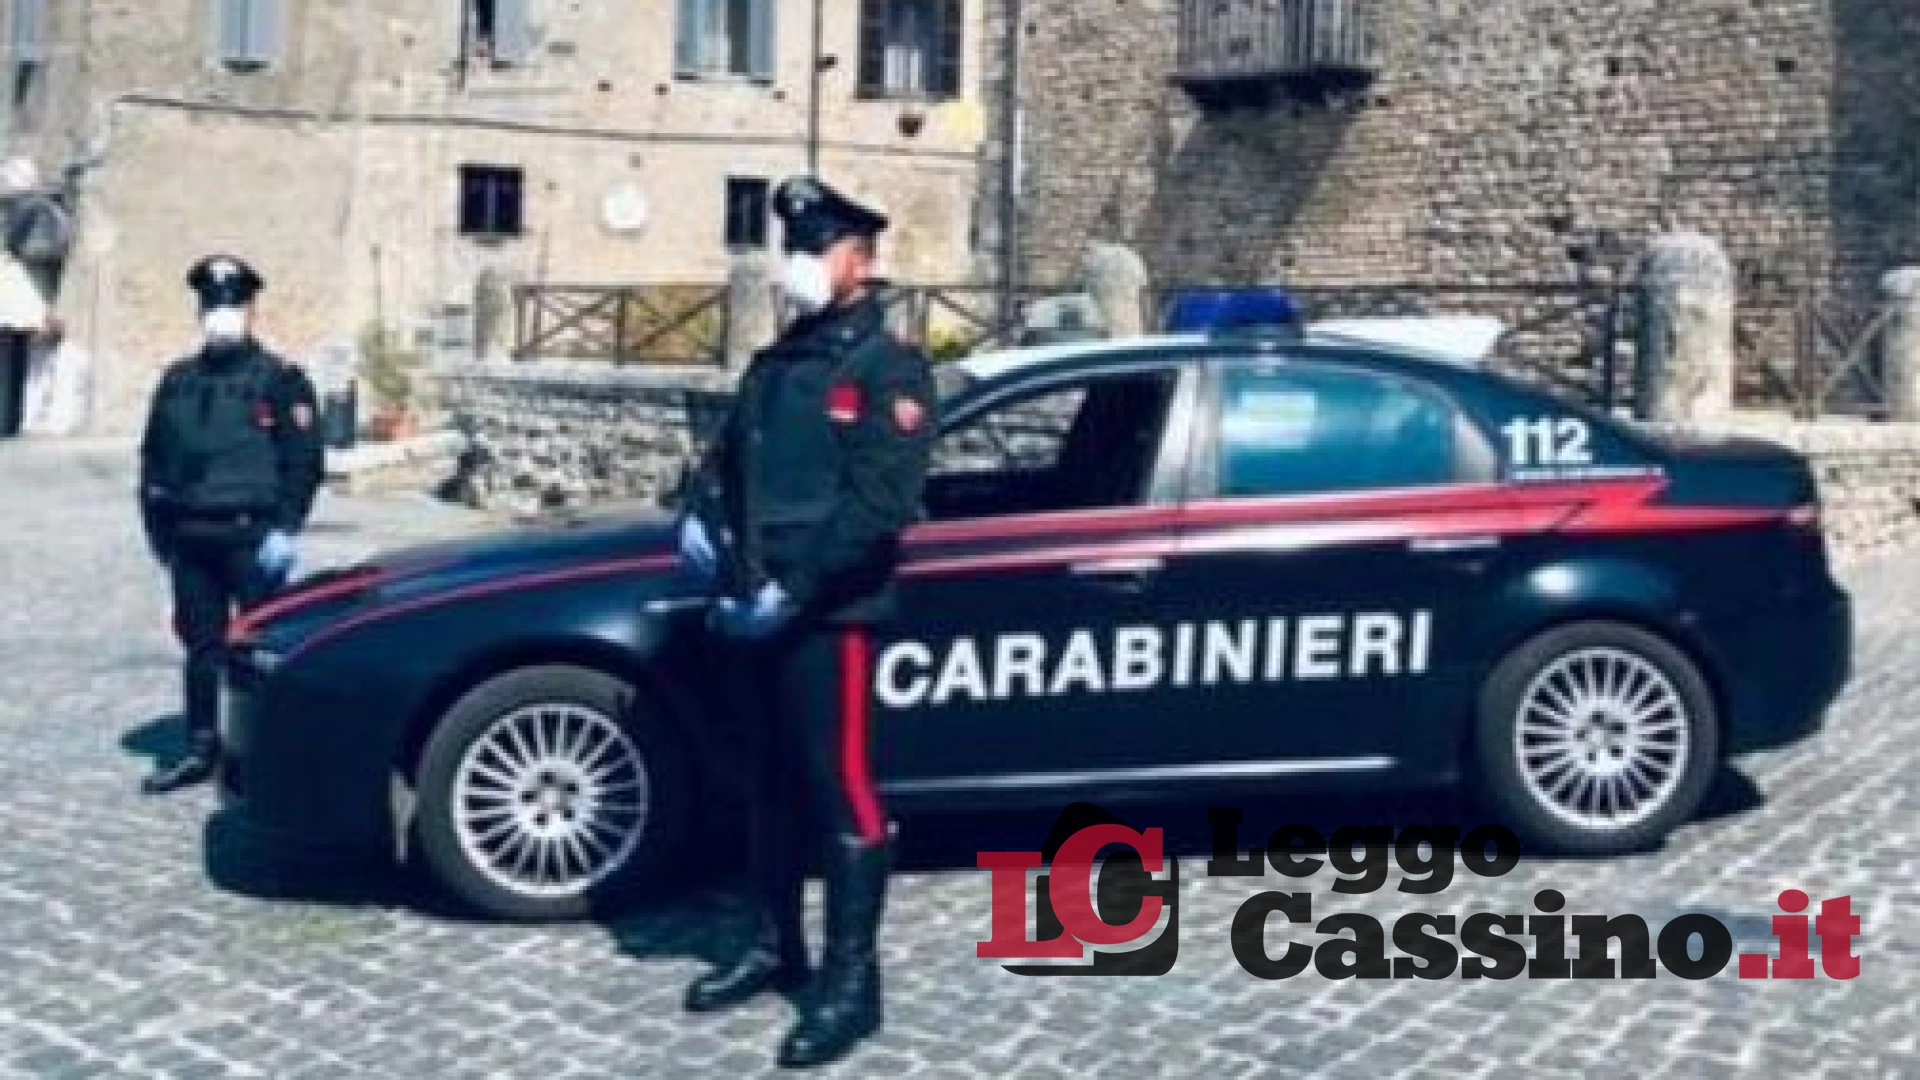 Va ad allenarsi in palestra e arrivano i carabinieri: scattano le multe